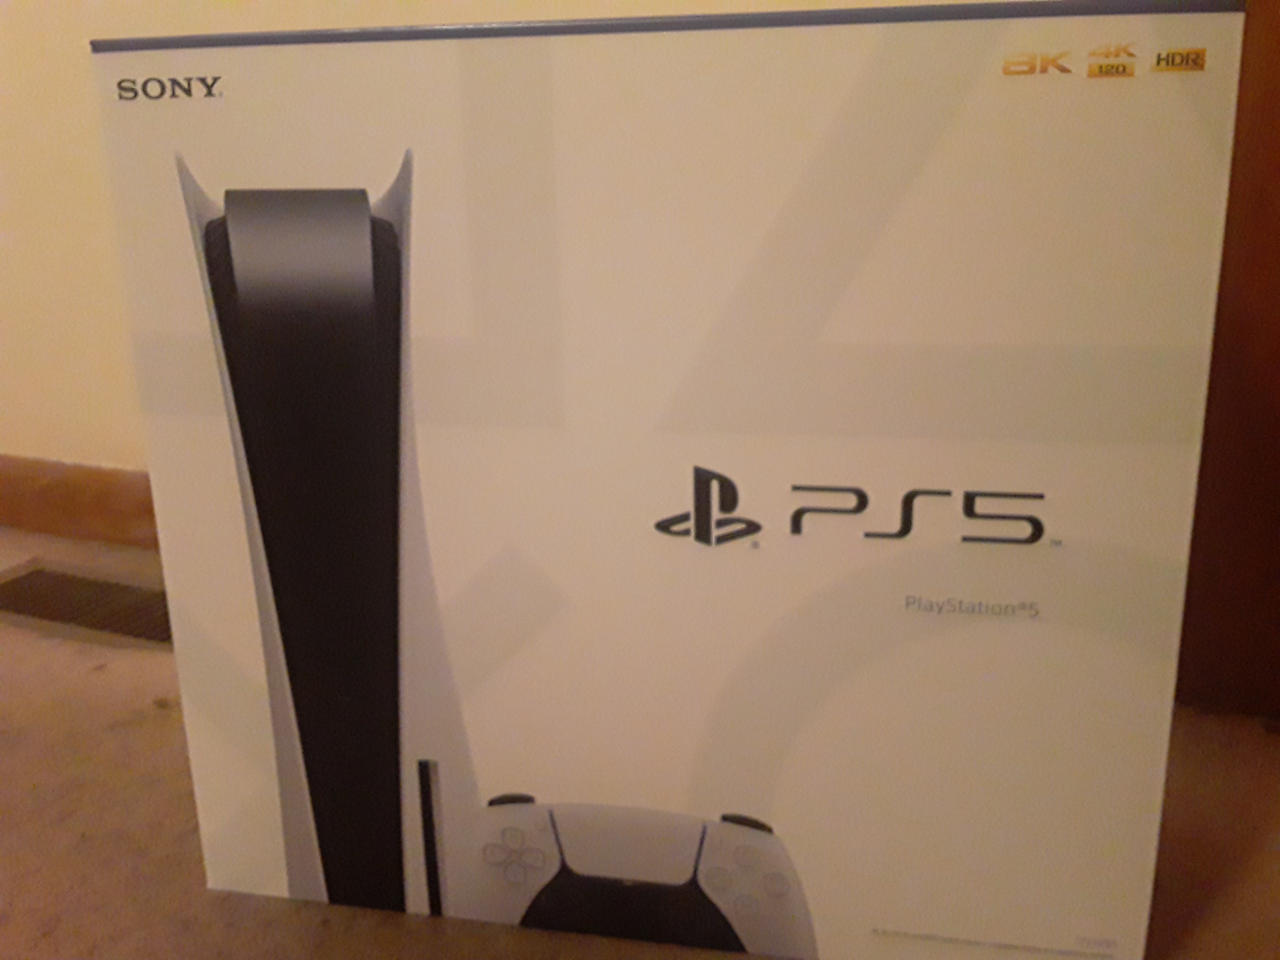  PlayStation: Play Has No Limits: PS5